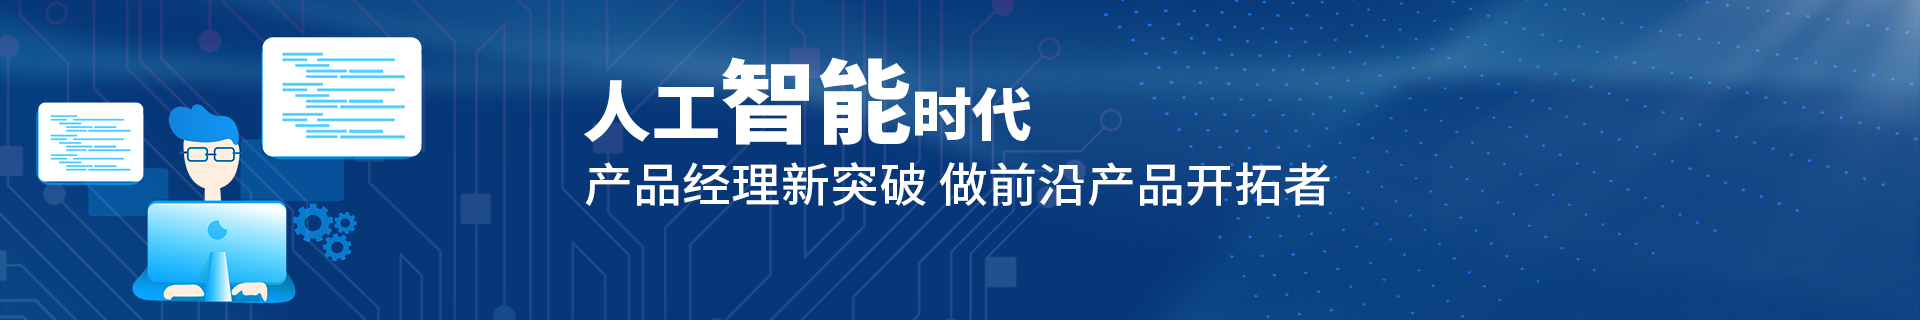 郑州二七区升学就业帮IT培训